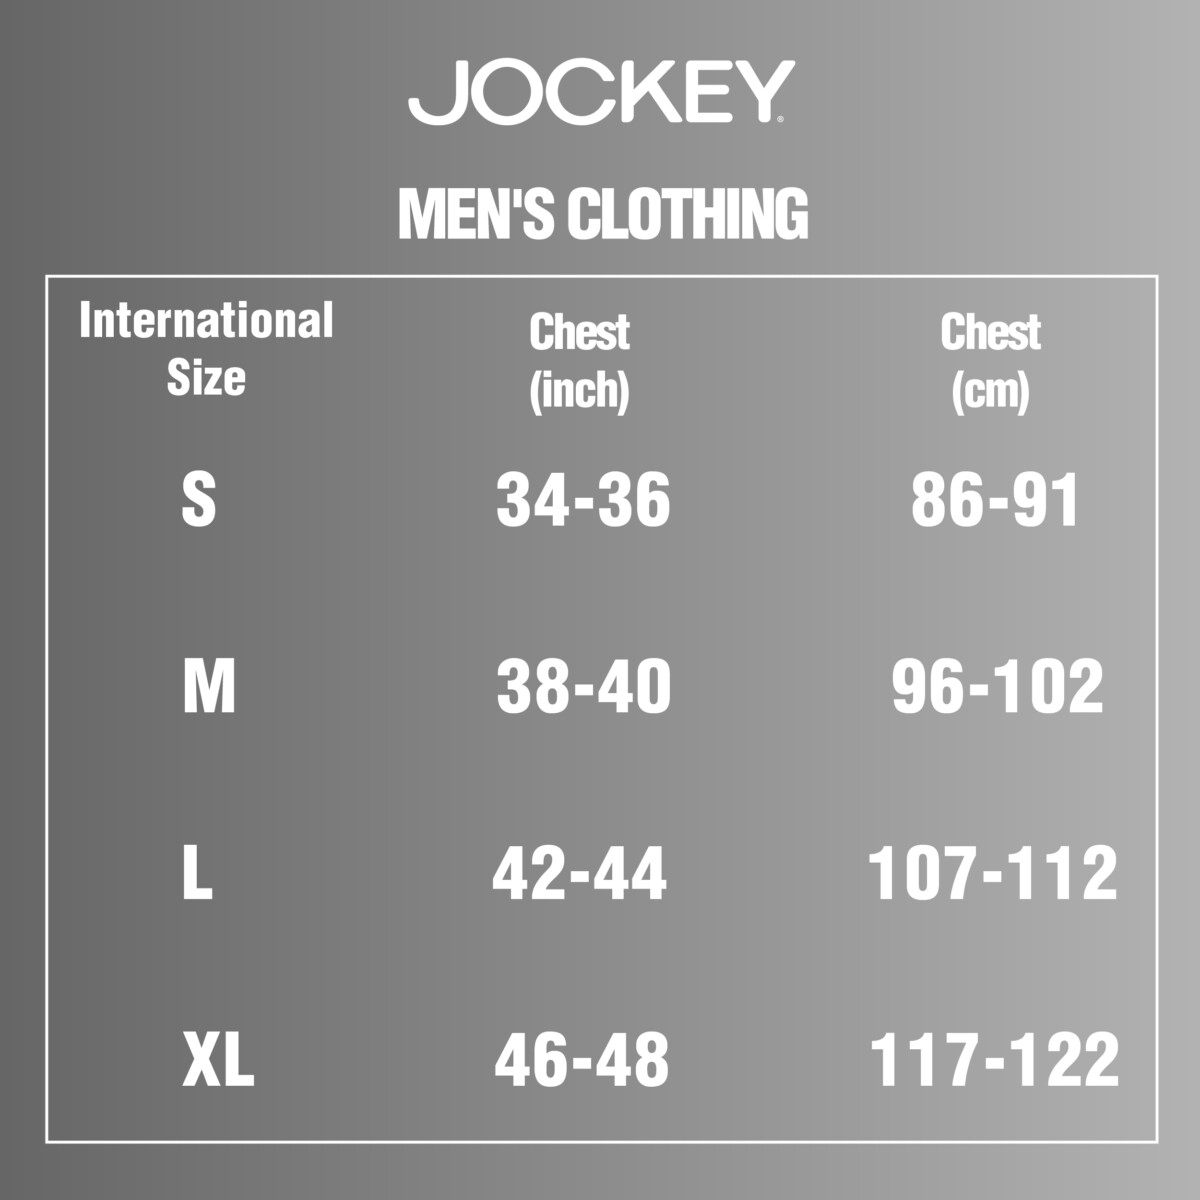 Jockey size chart - International Clothing